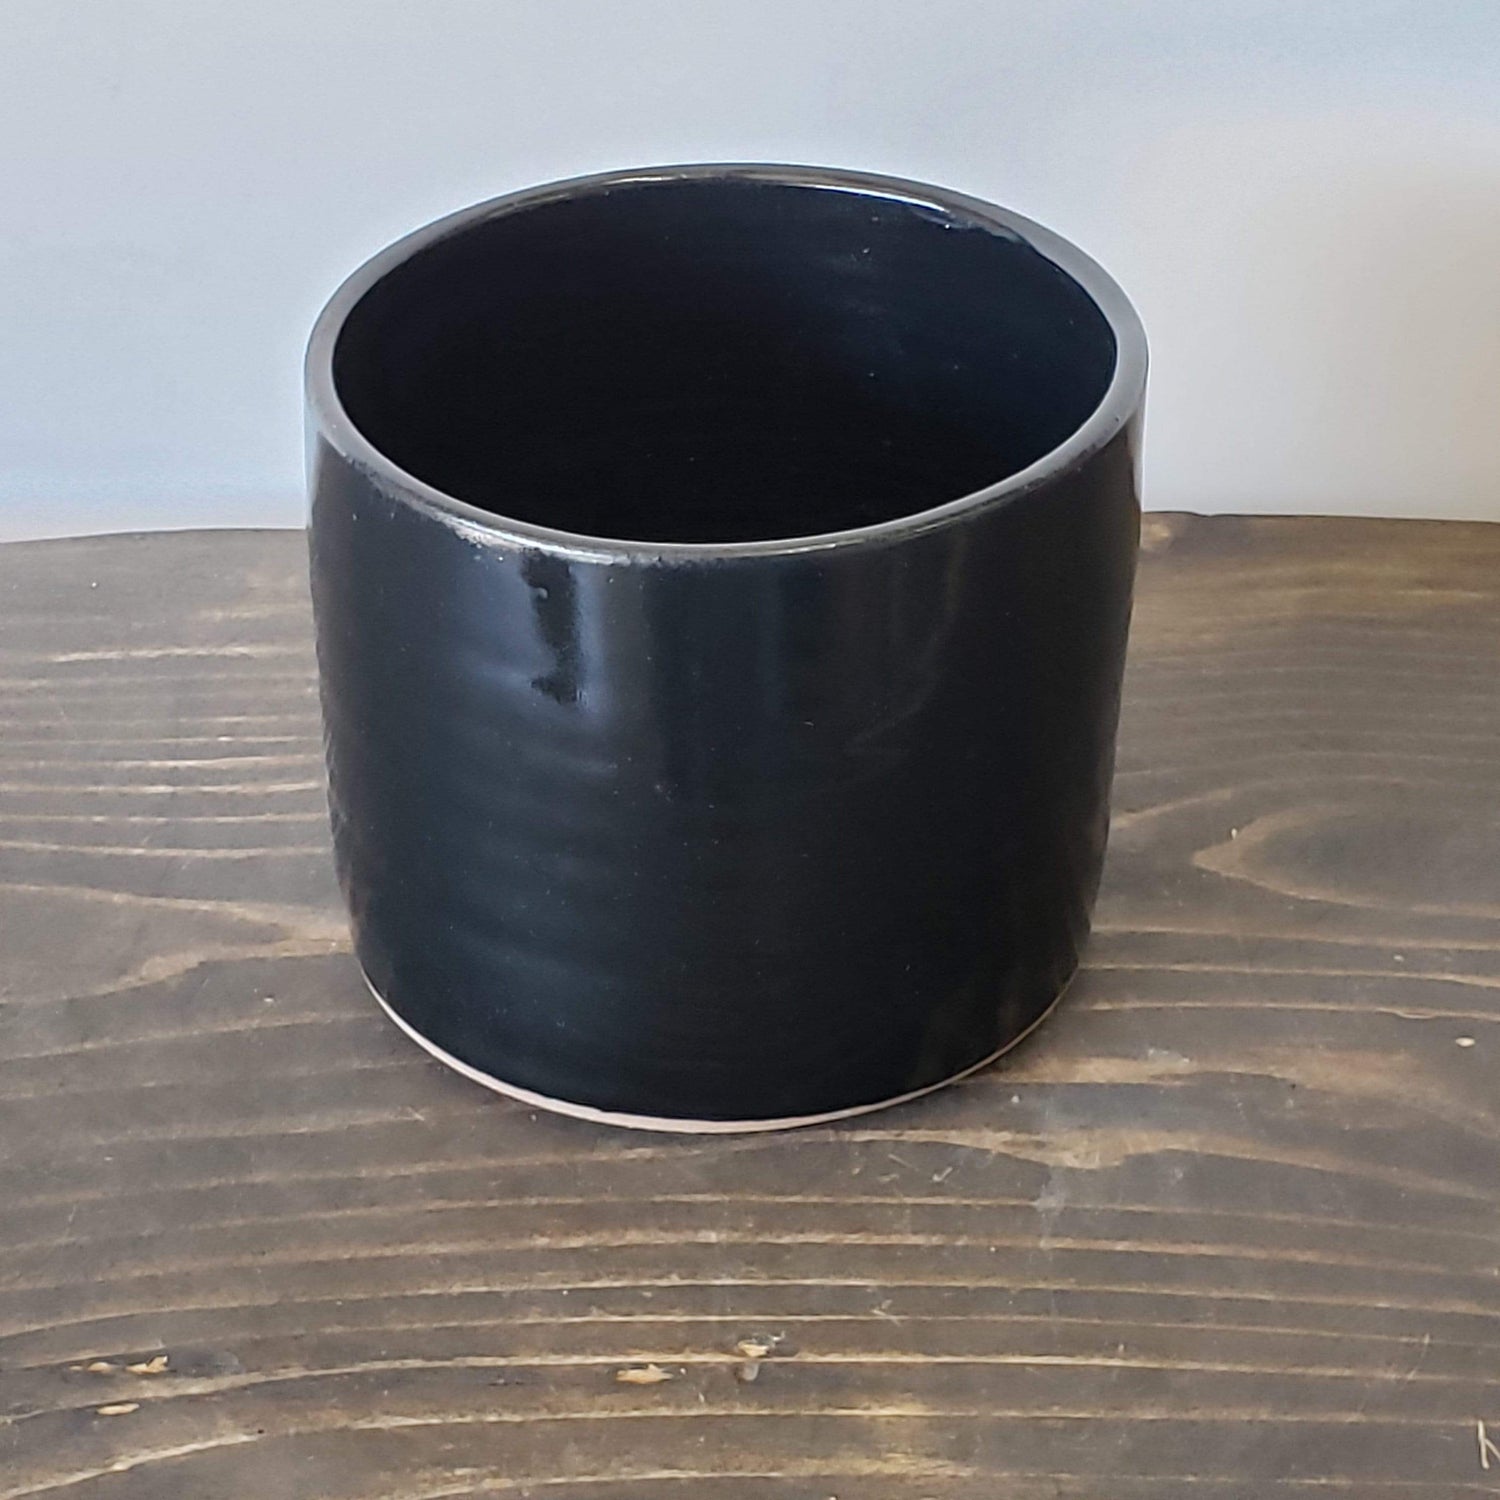 Gravesco Pottery Pot Black / 4" Modern Minimalist Cylinder Planter